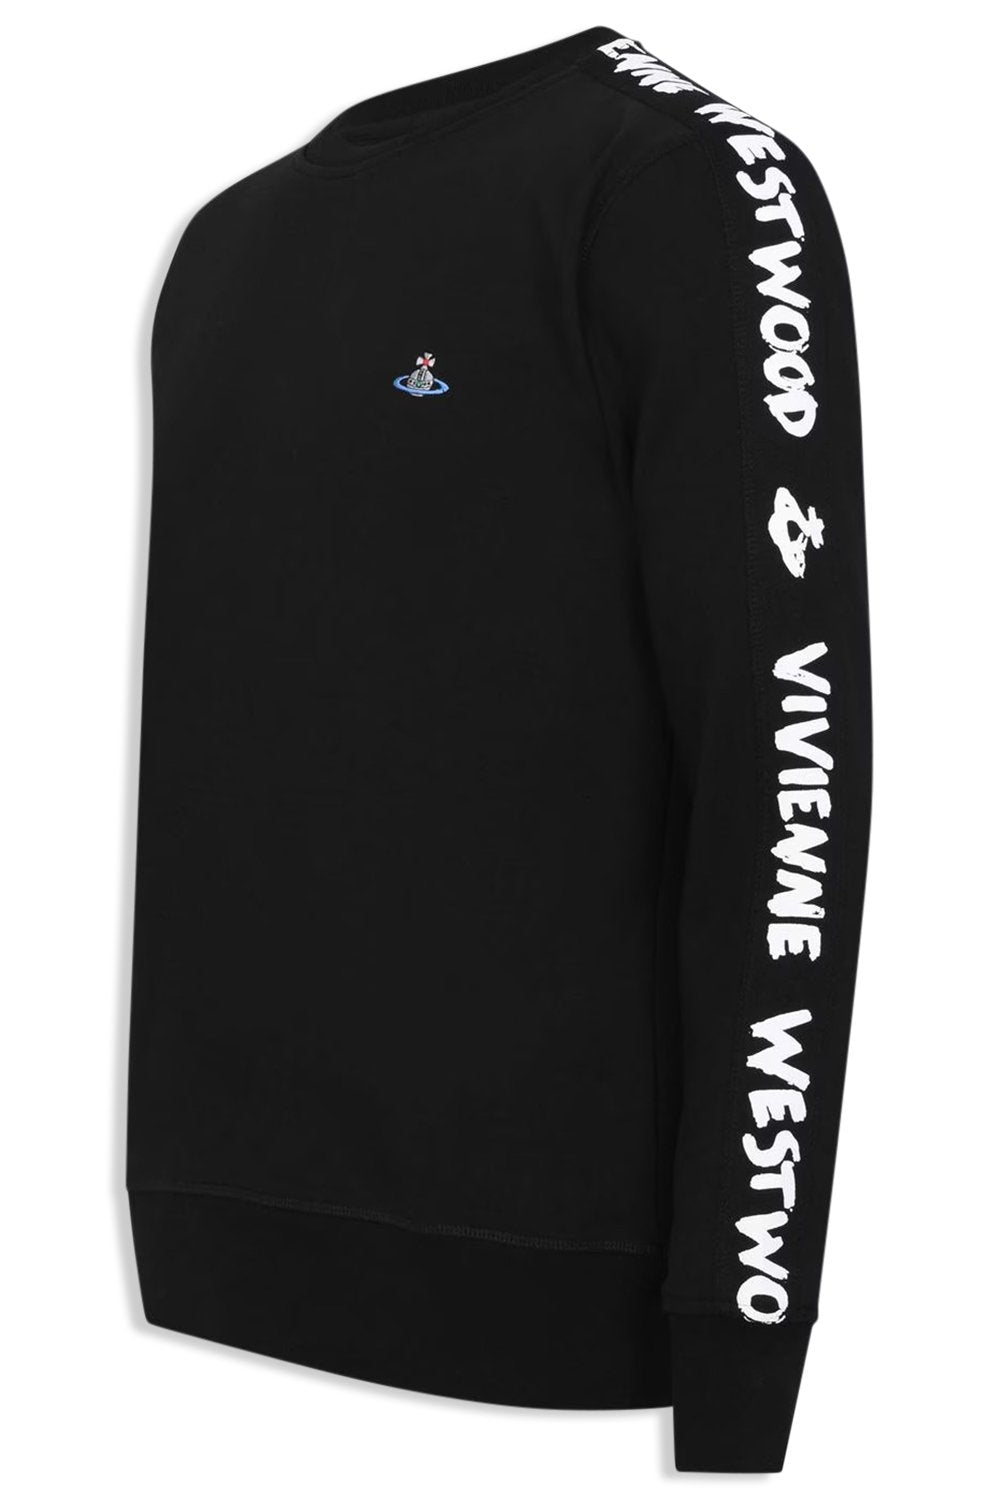 Men's Black Vivienne Westwood Taped Sweatshirt